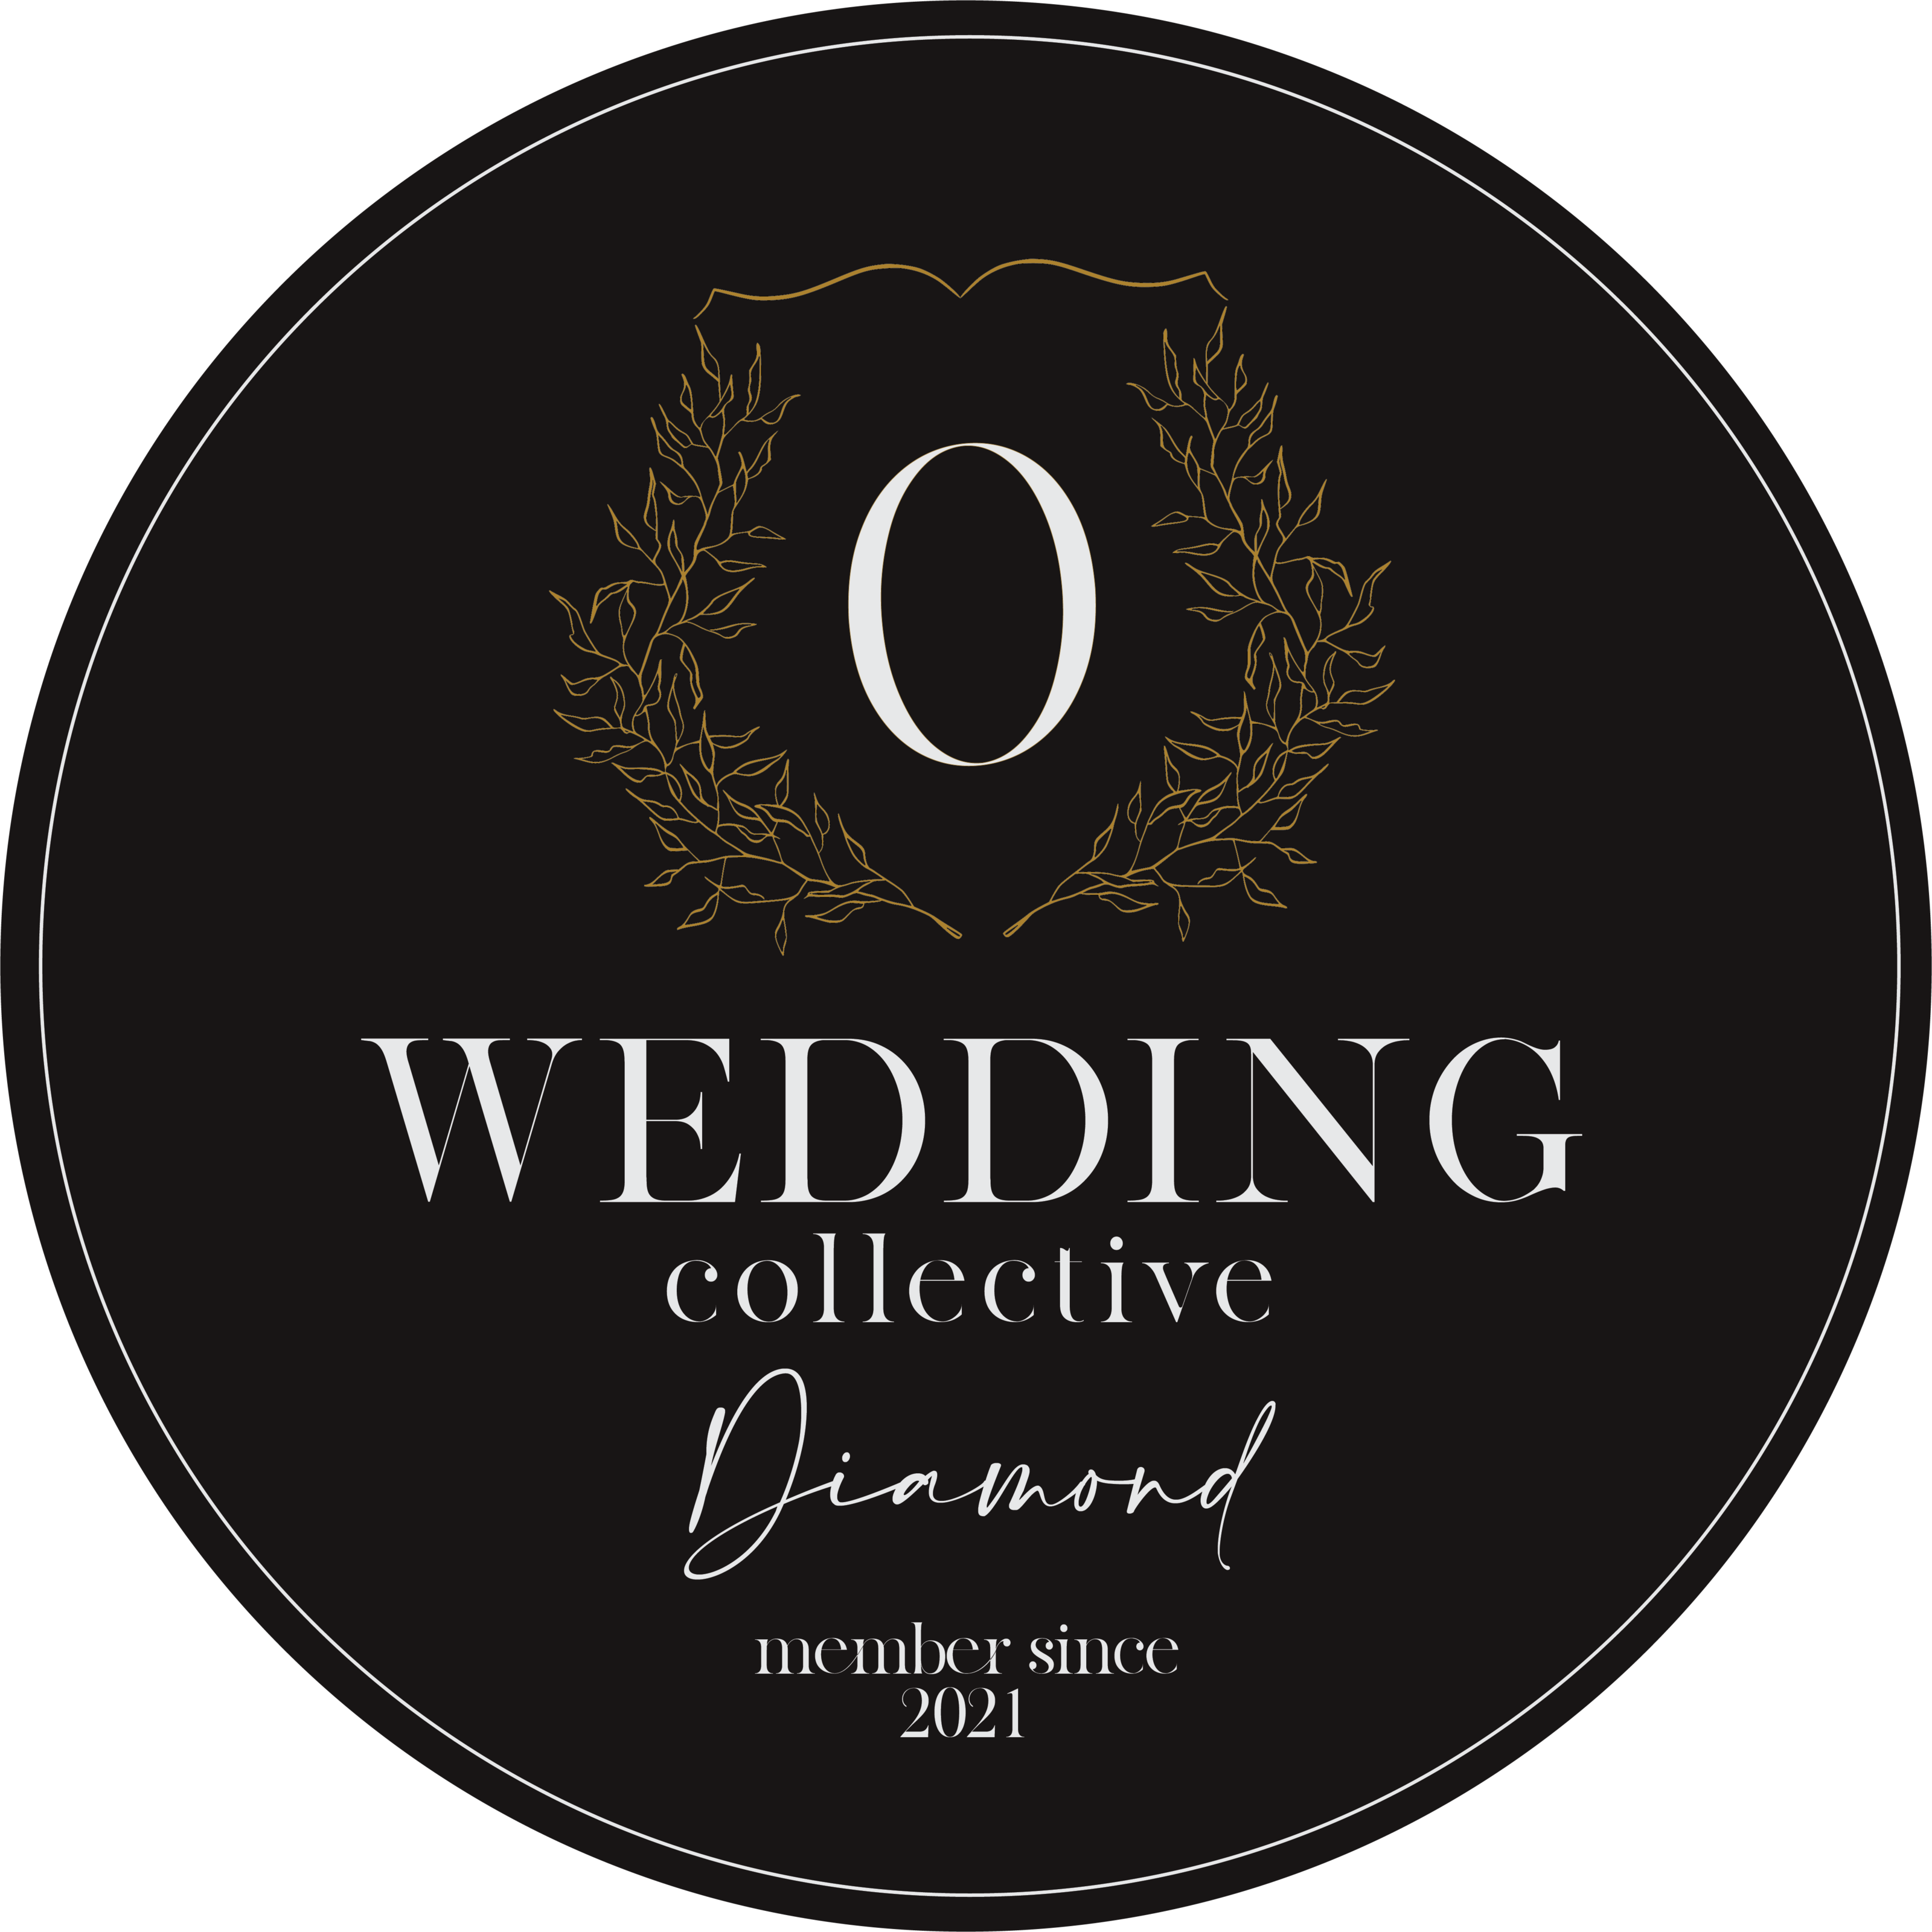 The Ohio Wedding Collective – Diamond Member